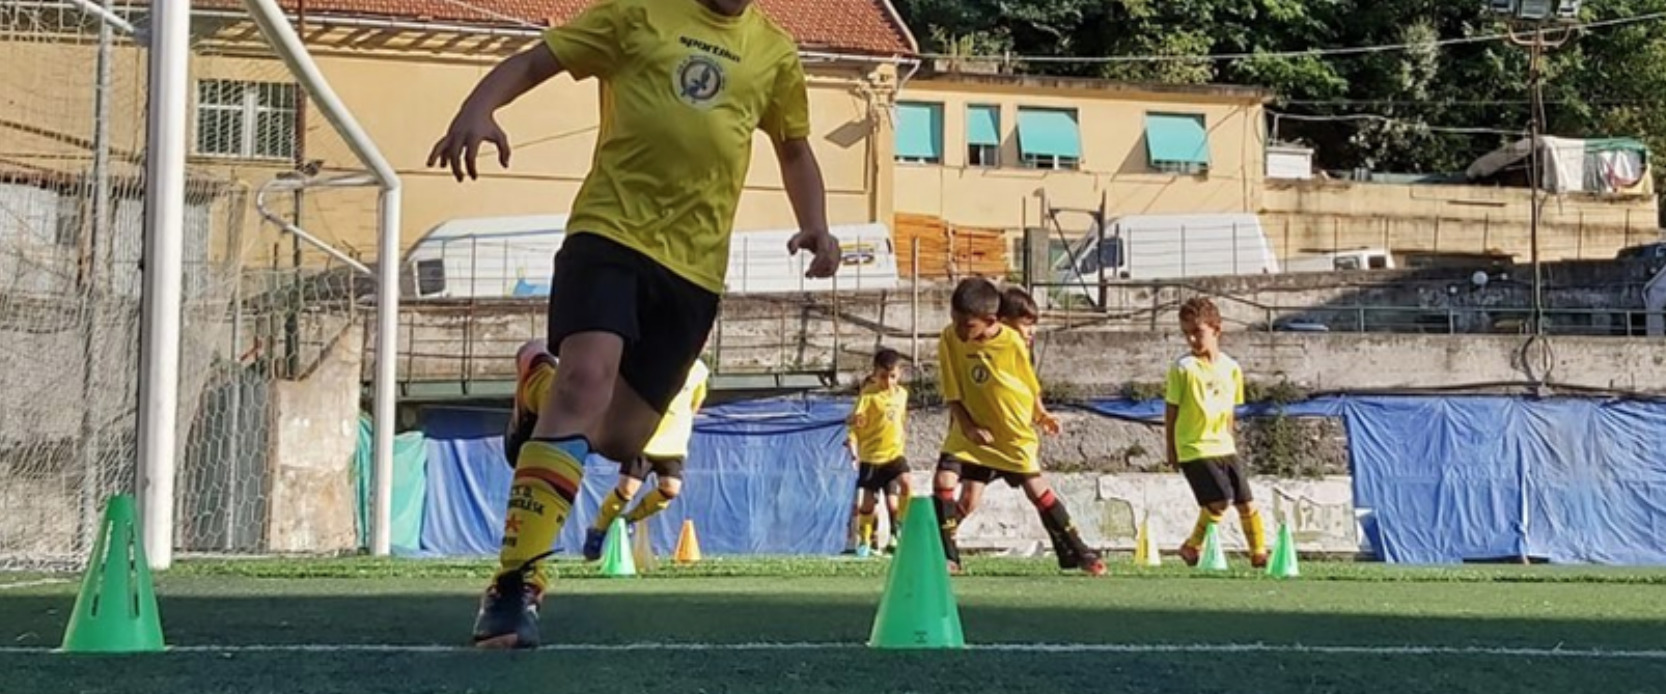 Sestri Levante, Rapallo Rivarolese e Rupinaro Sport sospendono gli allenamenti congiunti per l’attività giovanile: i comunicati